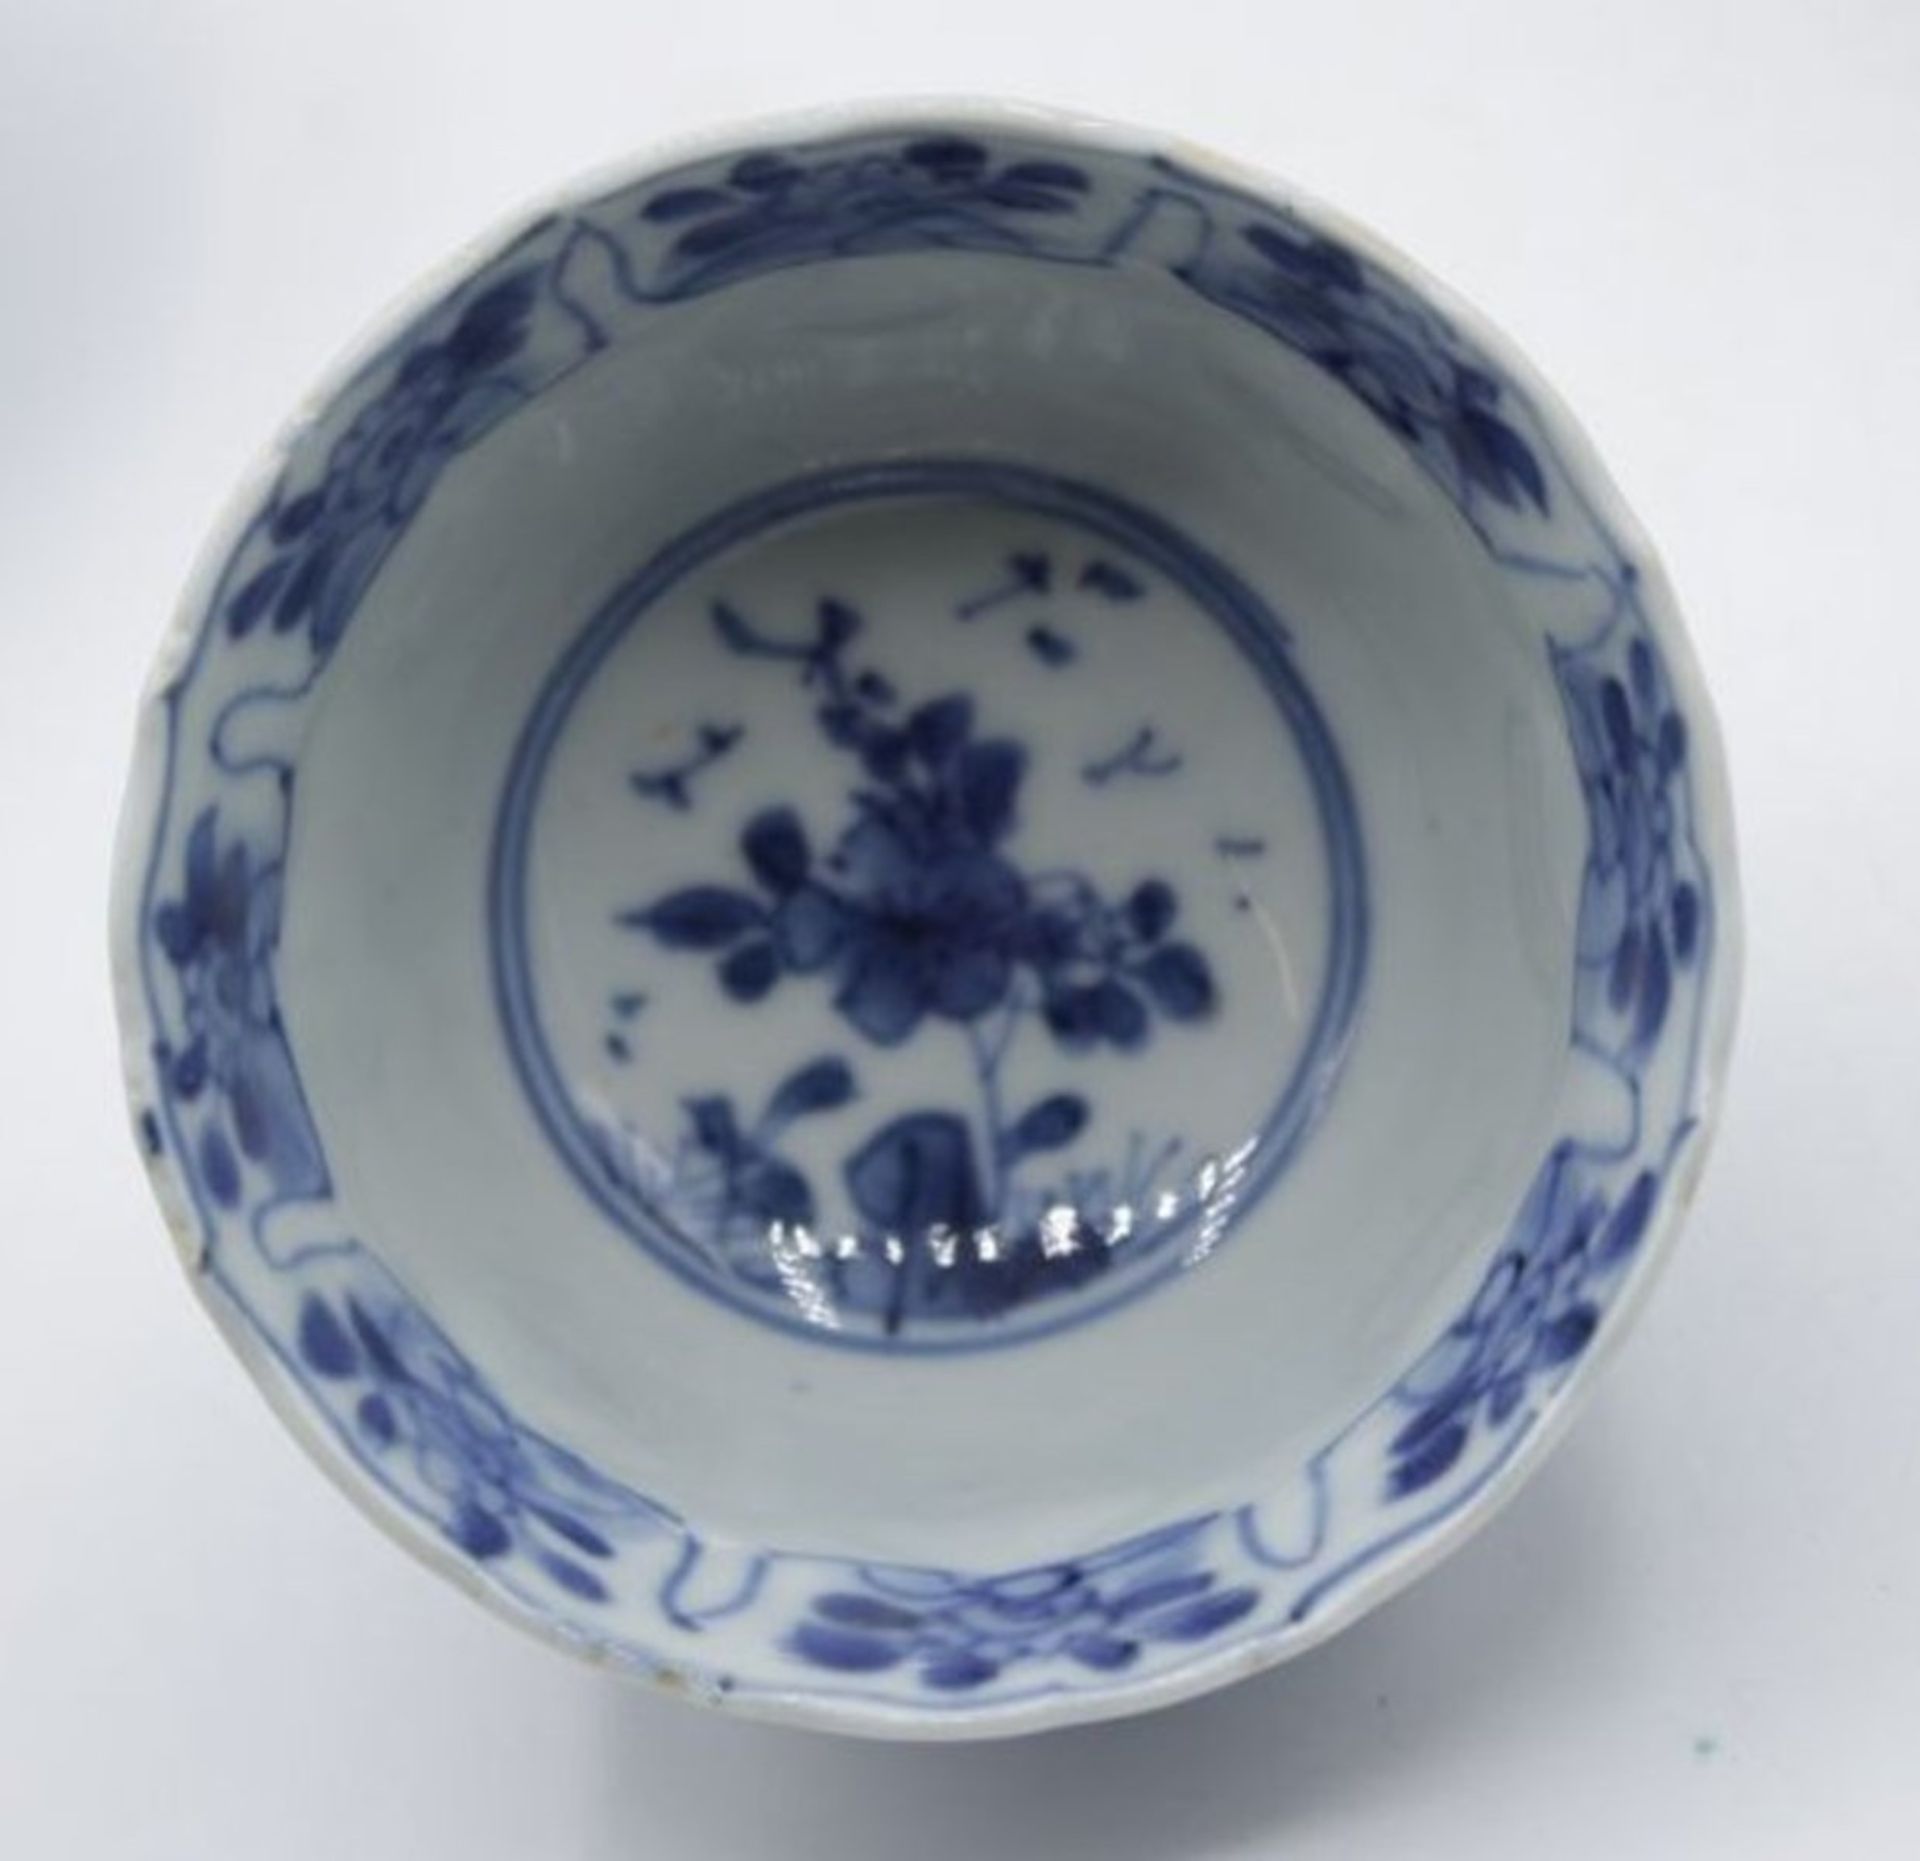 Konvolut div. China-Porzallan, blaue Dekore, jedes Teil mit Chip, Becher ca. H-4,5cm, Größter Teller - Bild 4 aus 10